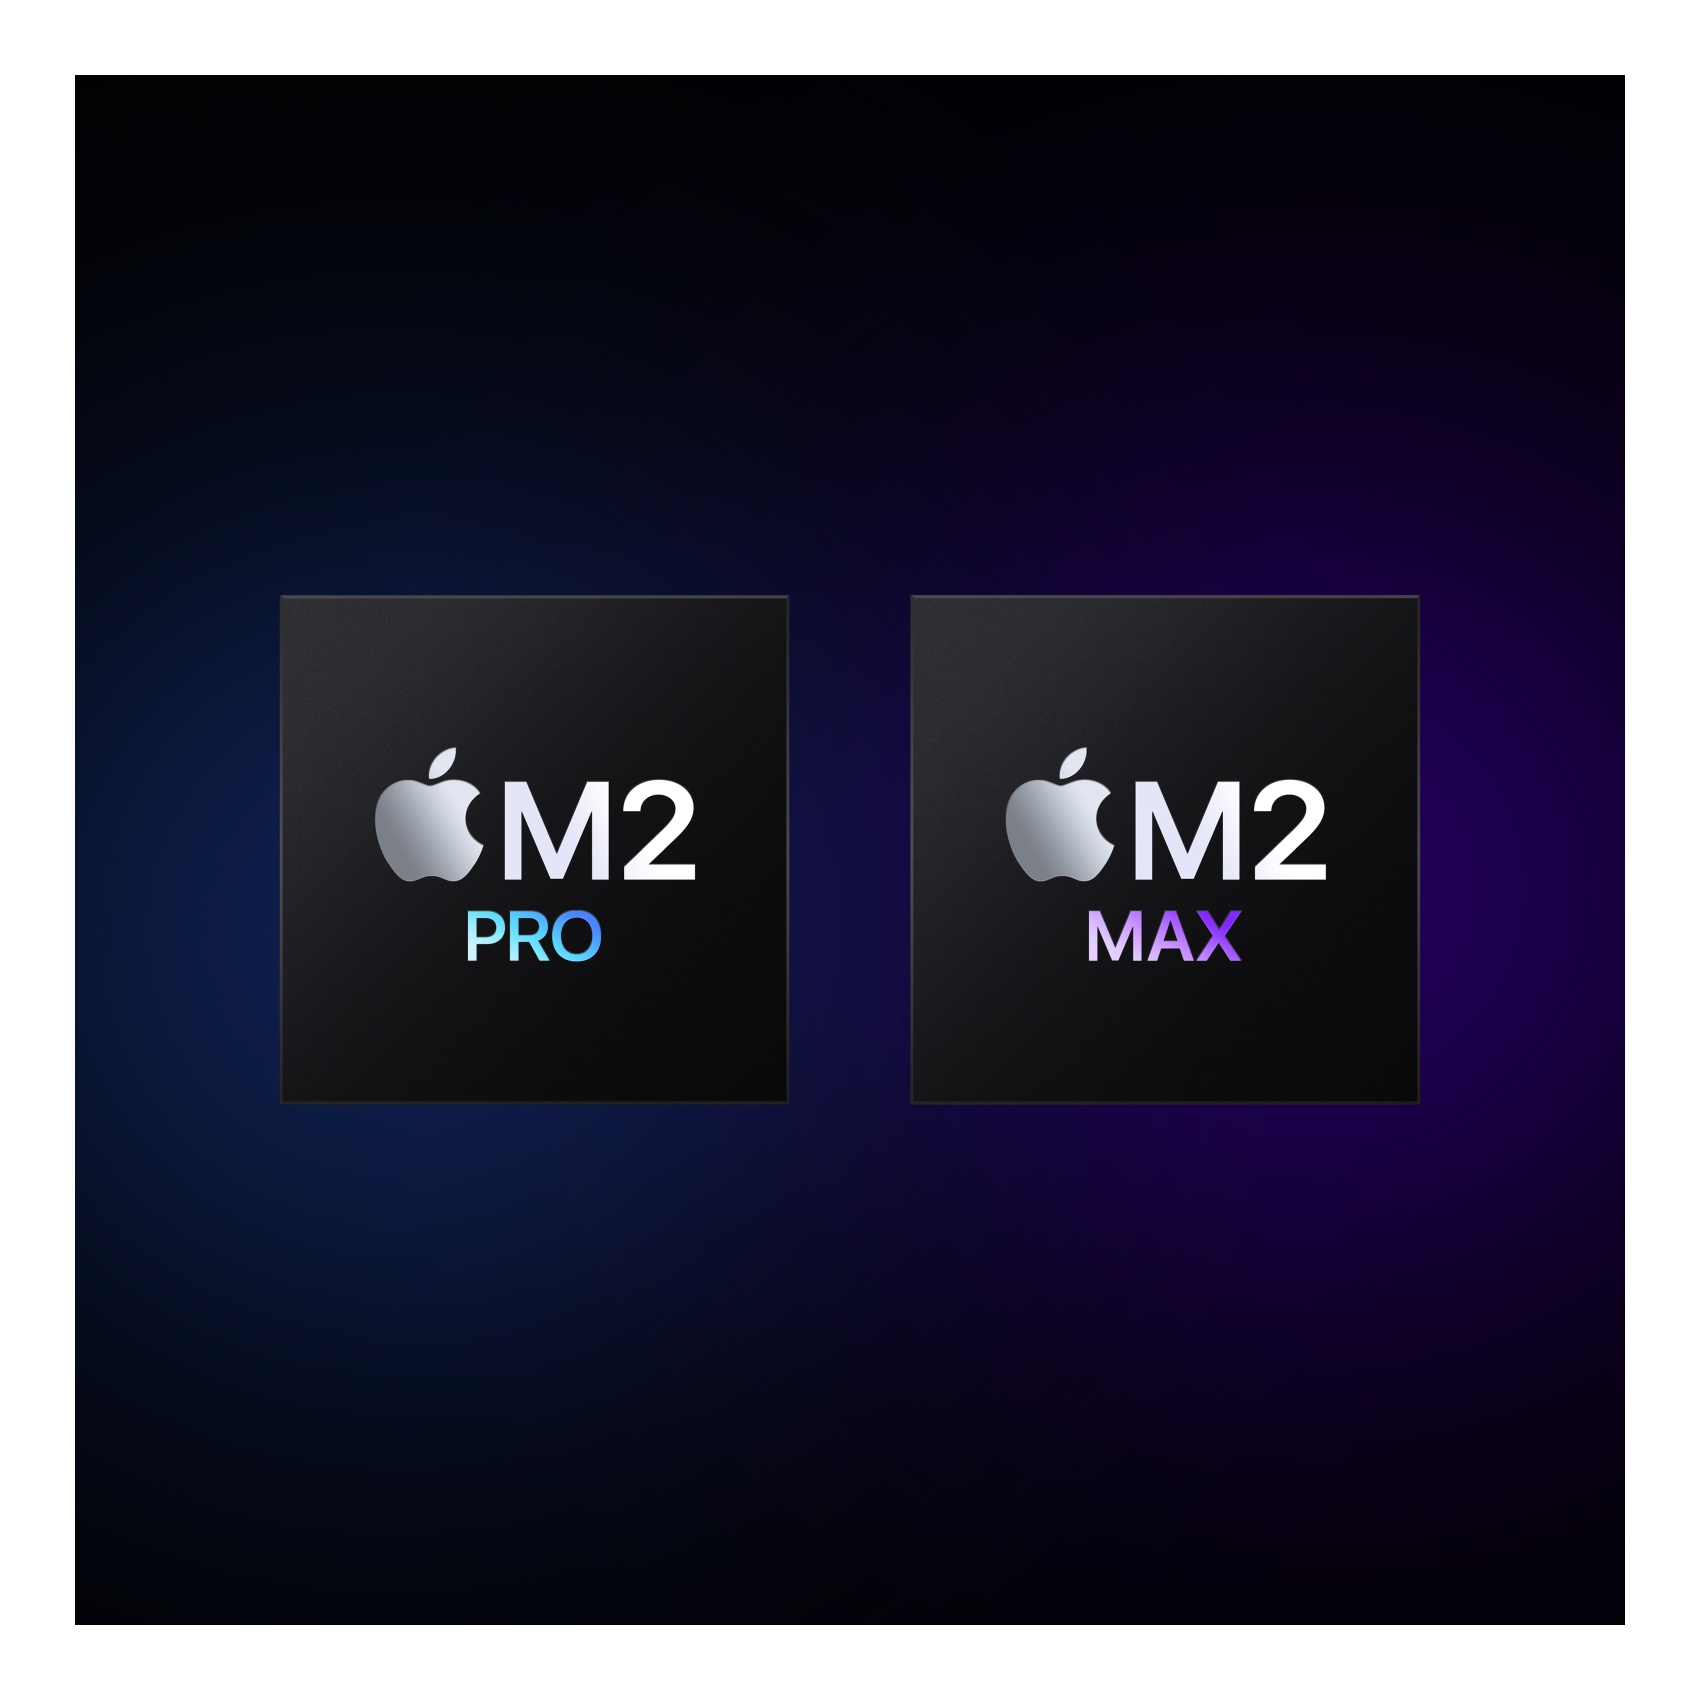 أبل ماك بوك برو  بشاشة بمقاس 14.2 بوصة، معالج M2 برو،1 تيرا  SDD، لوحة مفاتيح عربية - فضي